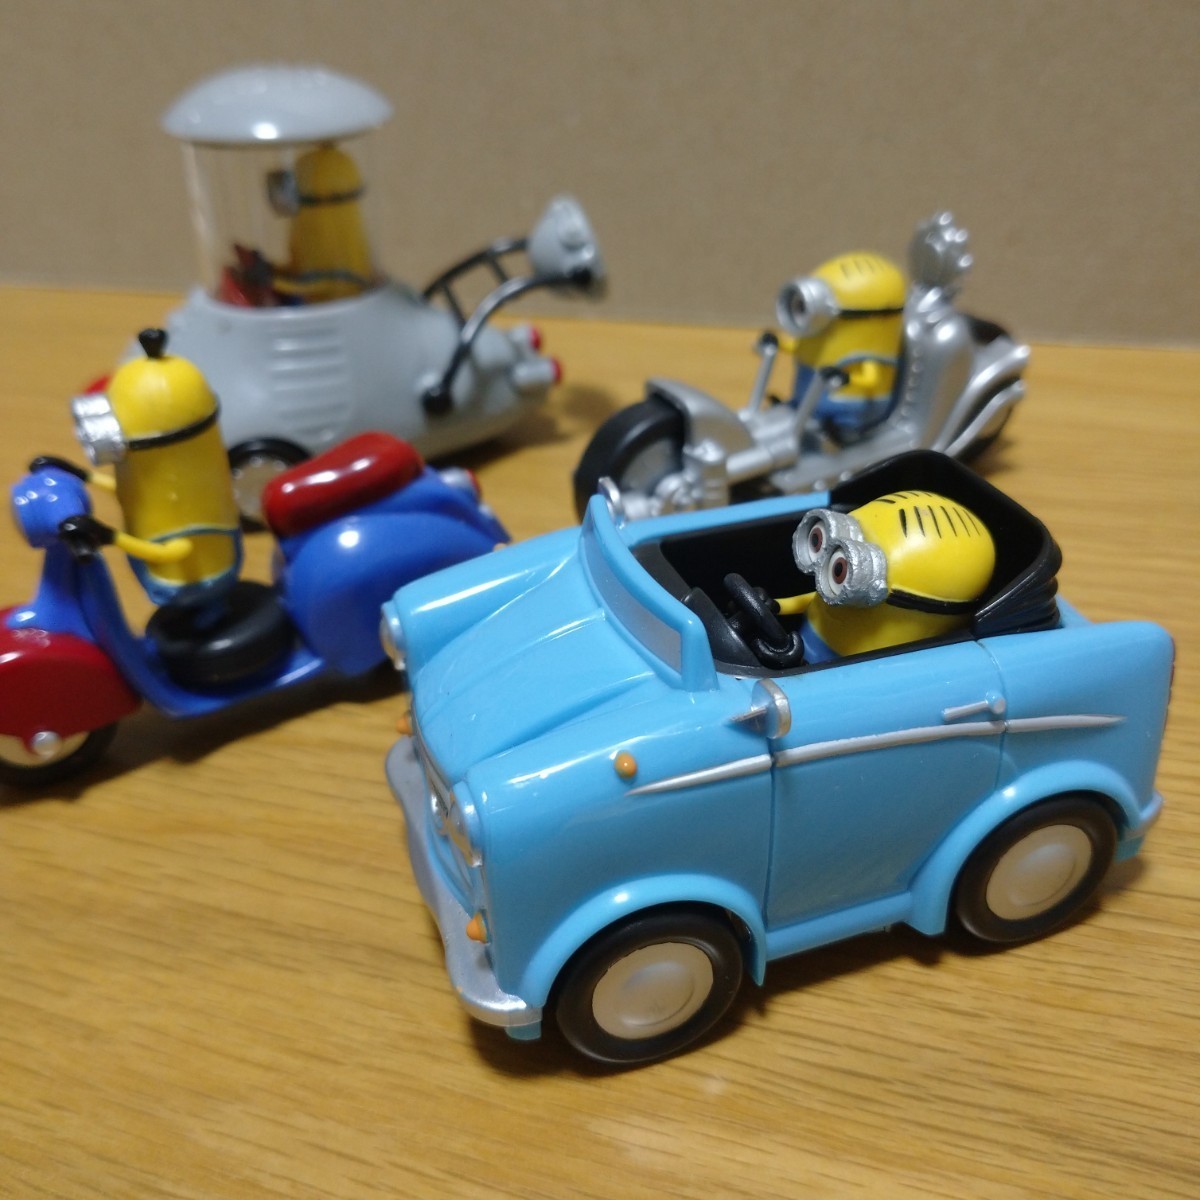 海外 限定 minions minion minicar ミニカー セット ミニオンズ ミニオン フィギュア マスコット figure コレクション 置物 車 バイク ２_画像2